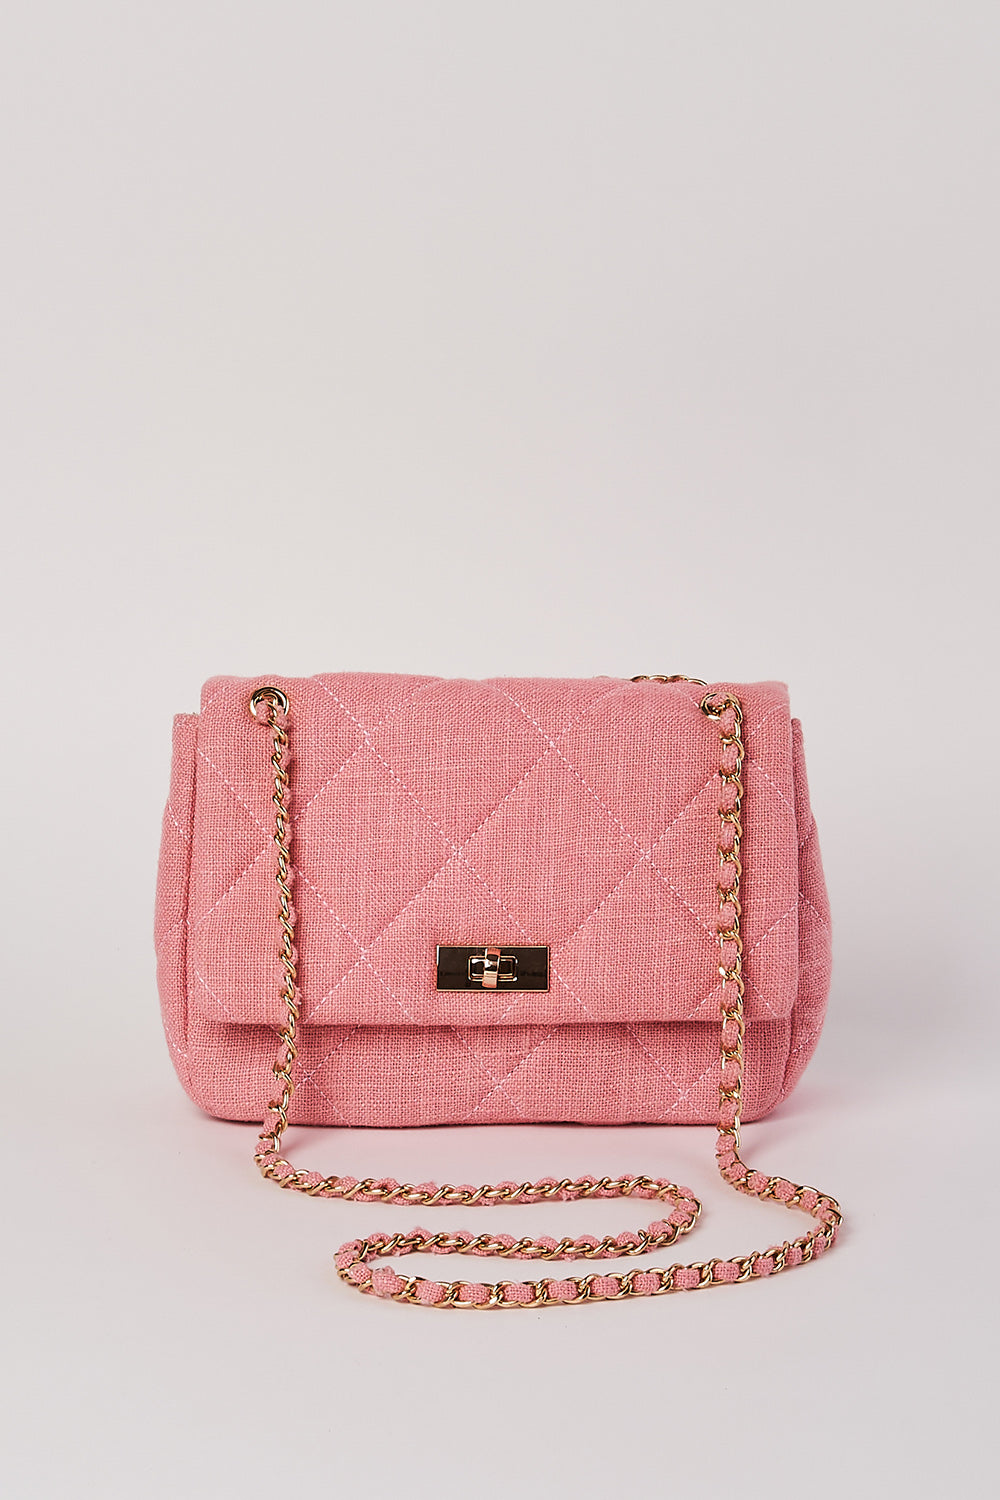 See by Chloe Hana Crossbody Bag in Sunset Pink – Stanley Korshak